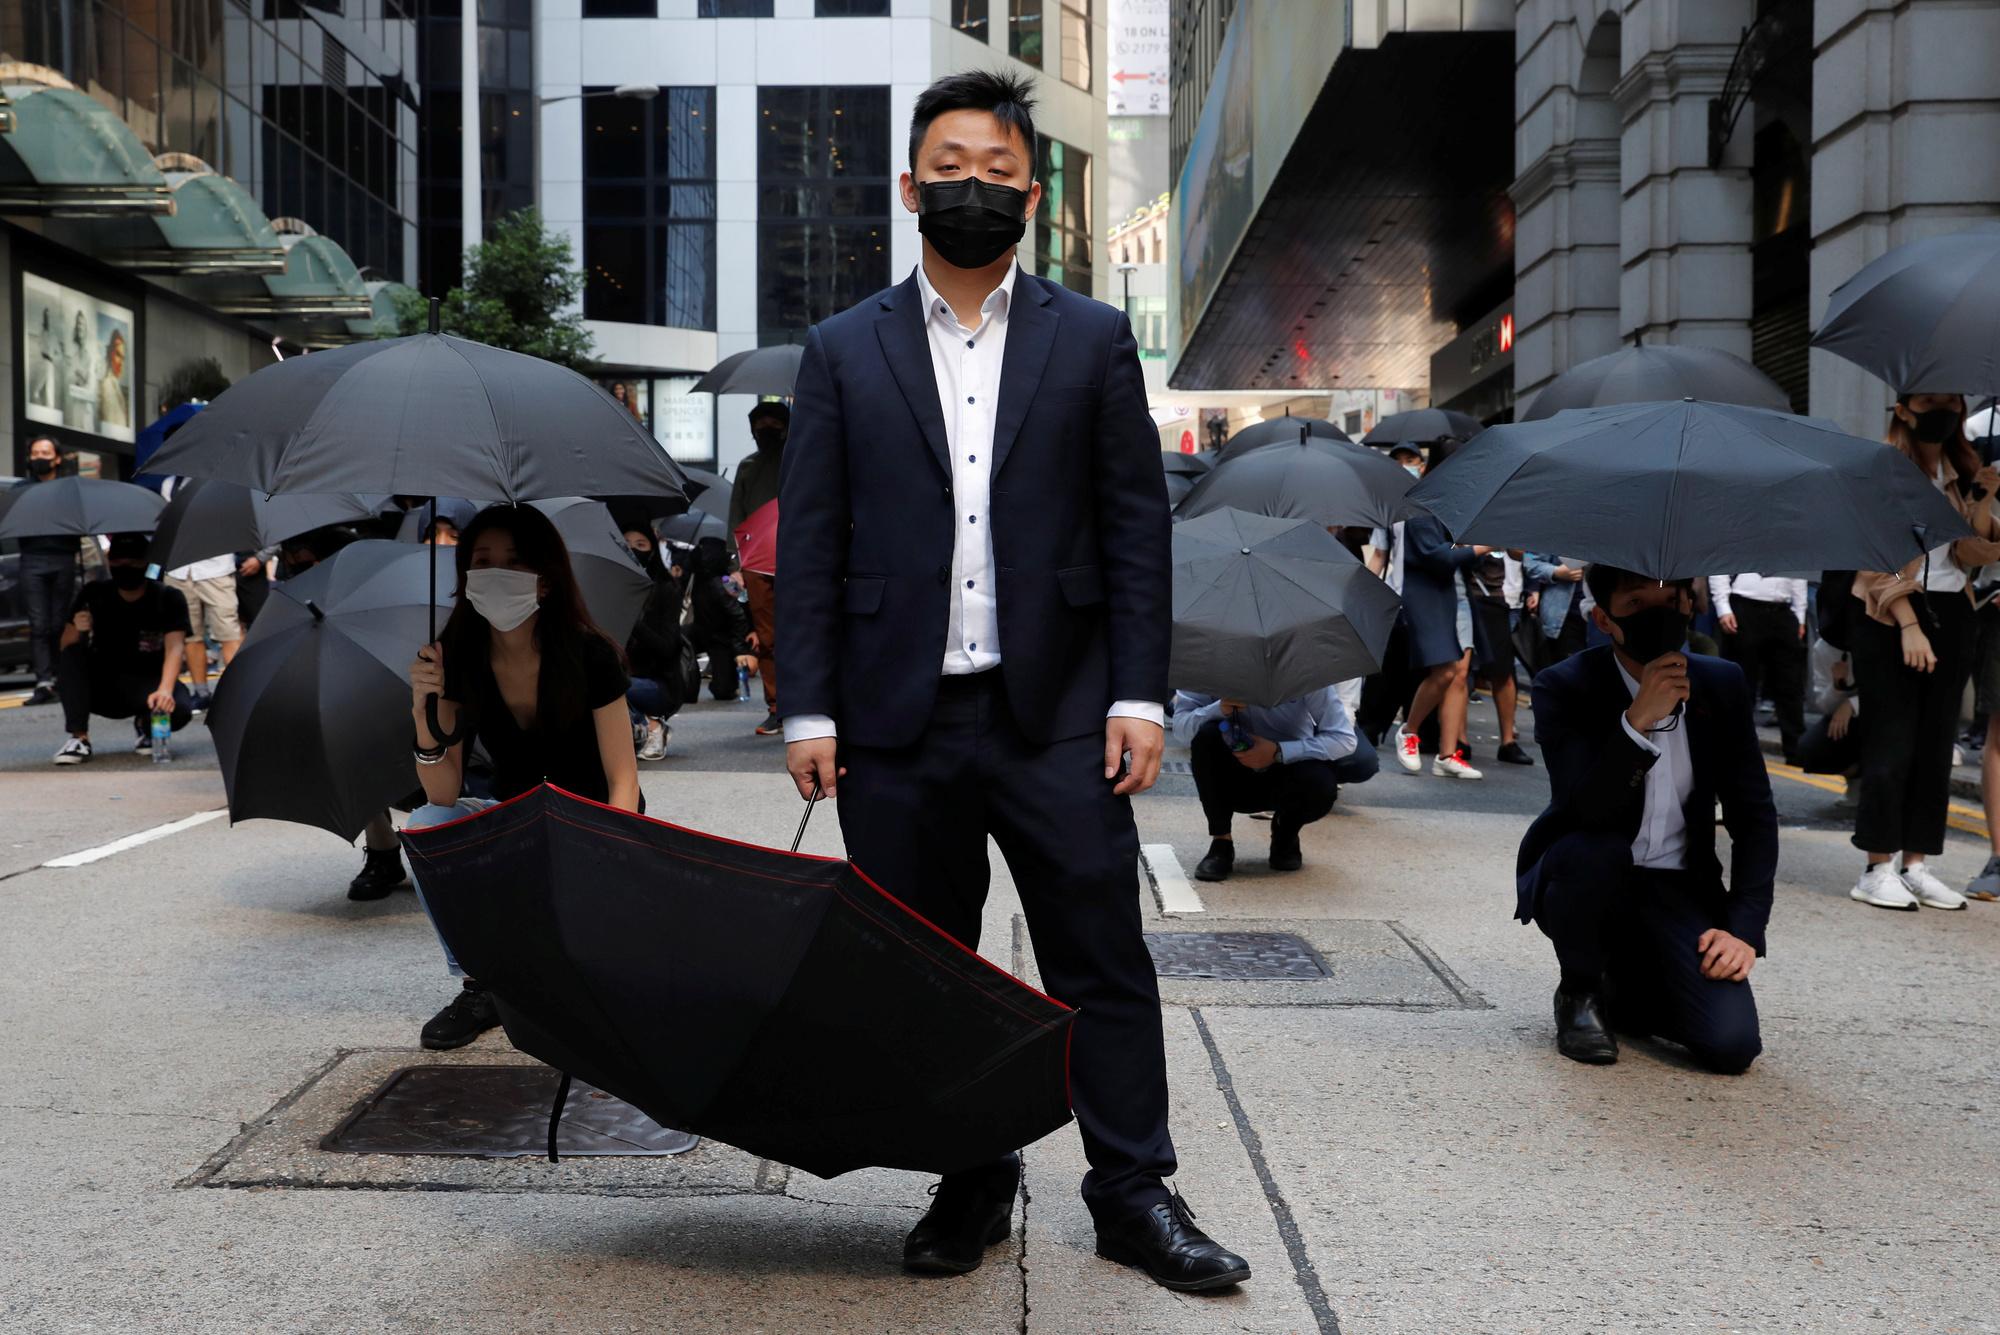 Mensen protesteren met paraplu's om zich te beschermen tegen het traangas van de oproerpolitie in Hongkong.